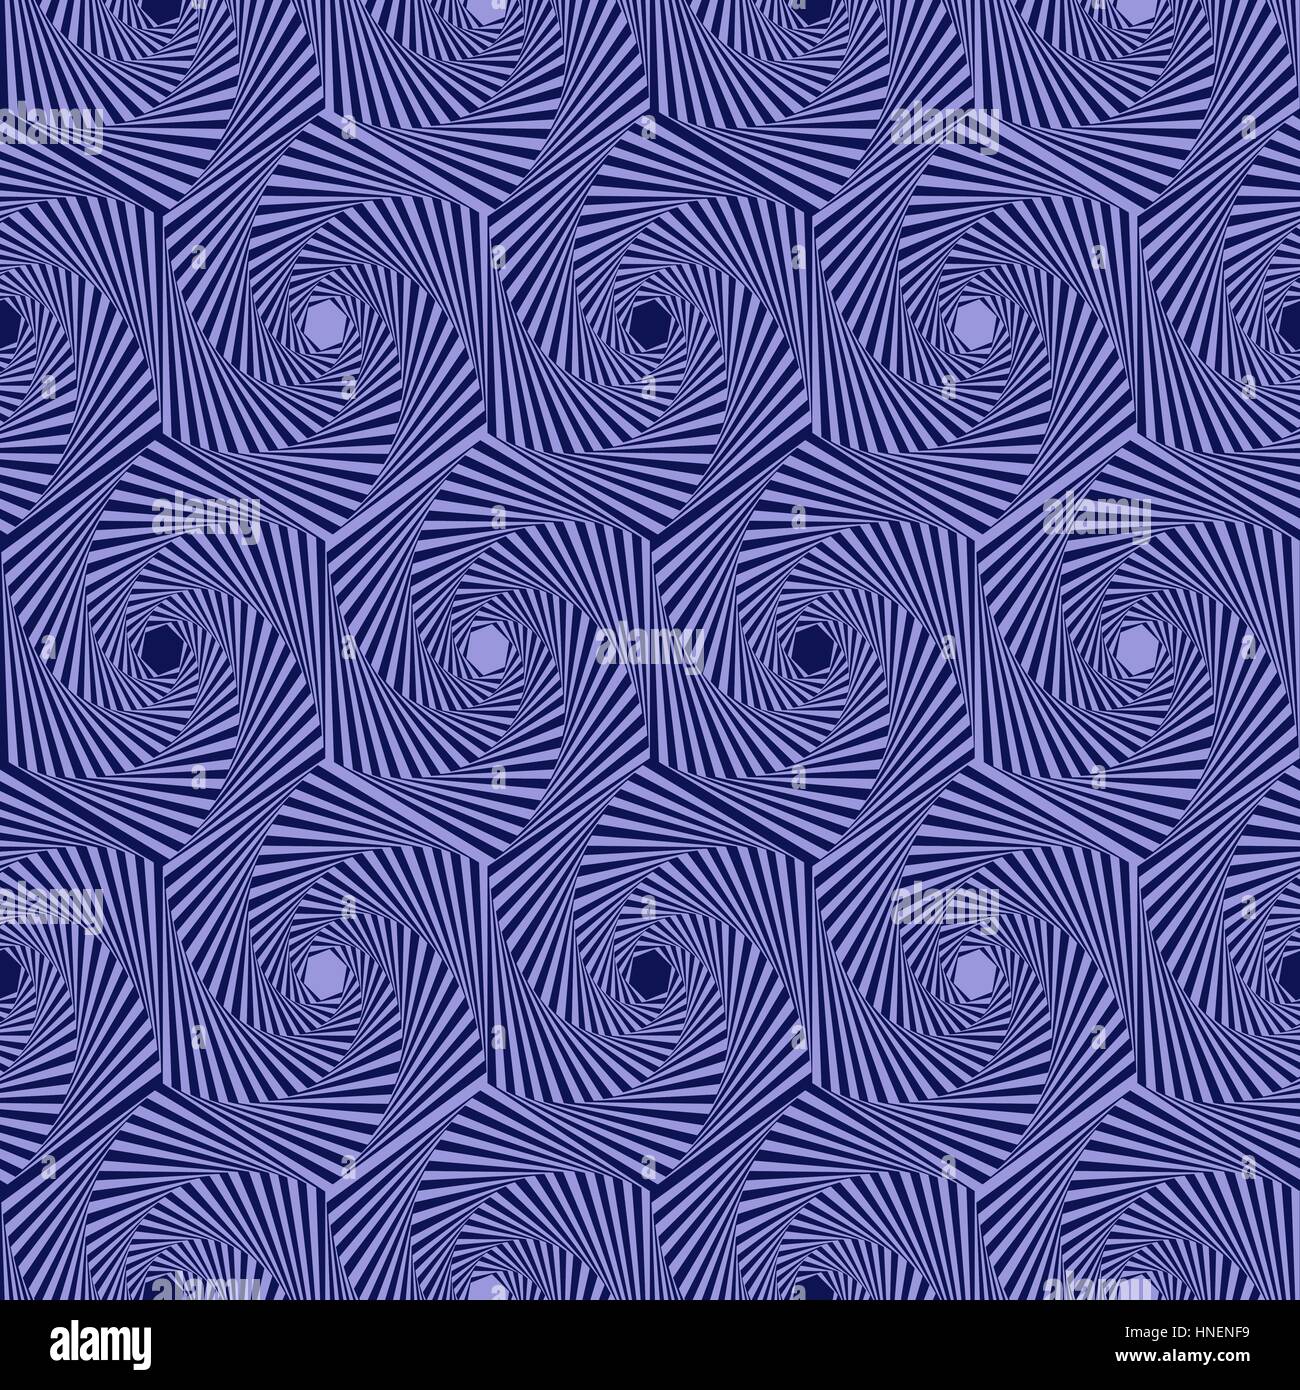 Résumé motif vectoriel continu avec des formes hexagonales concentriques formant les séquences qui tourbillonnent dans les tons de bleu Illustration de Vecteur